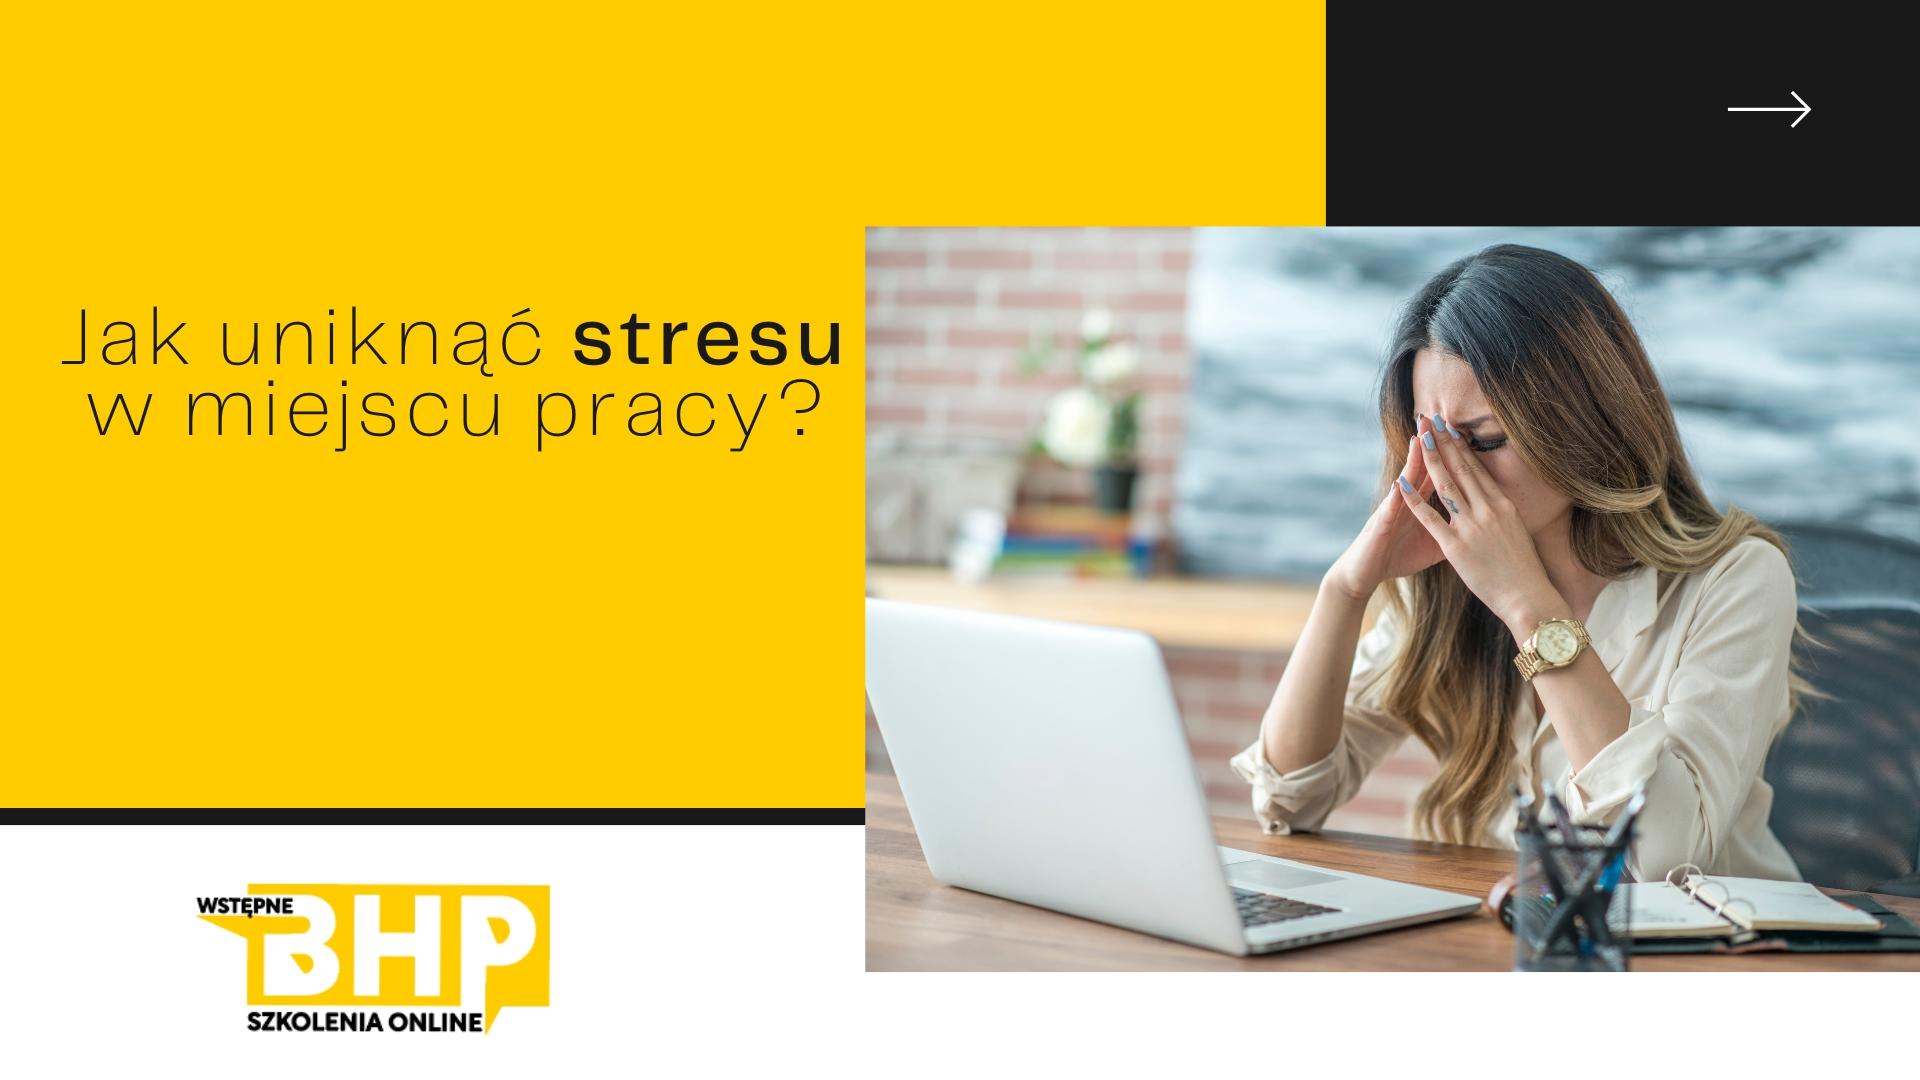 Jak uniknąć stresu w miejscu pracy?